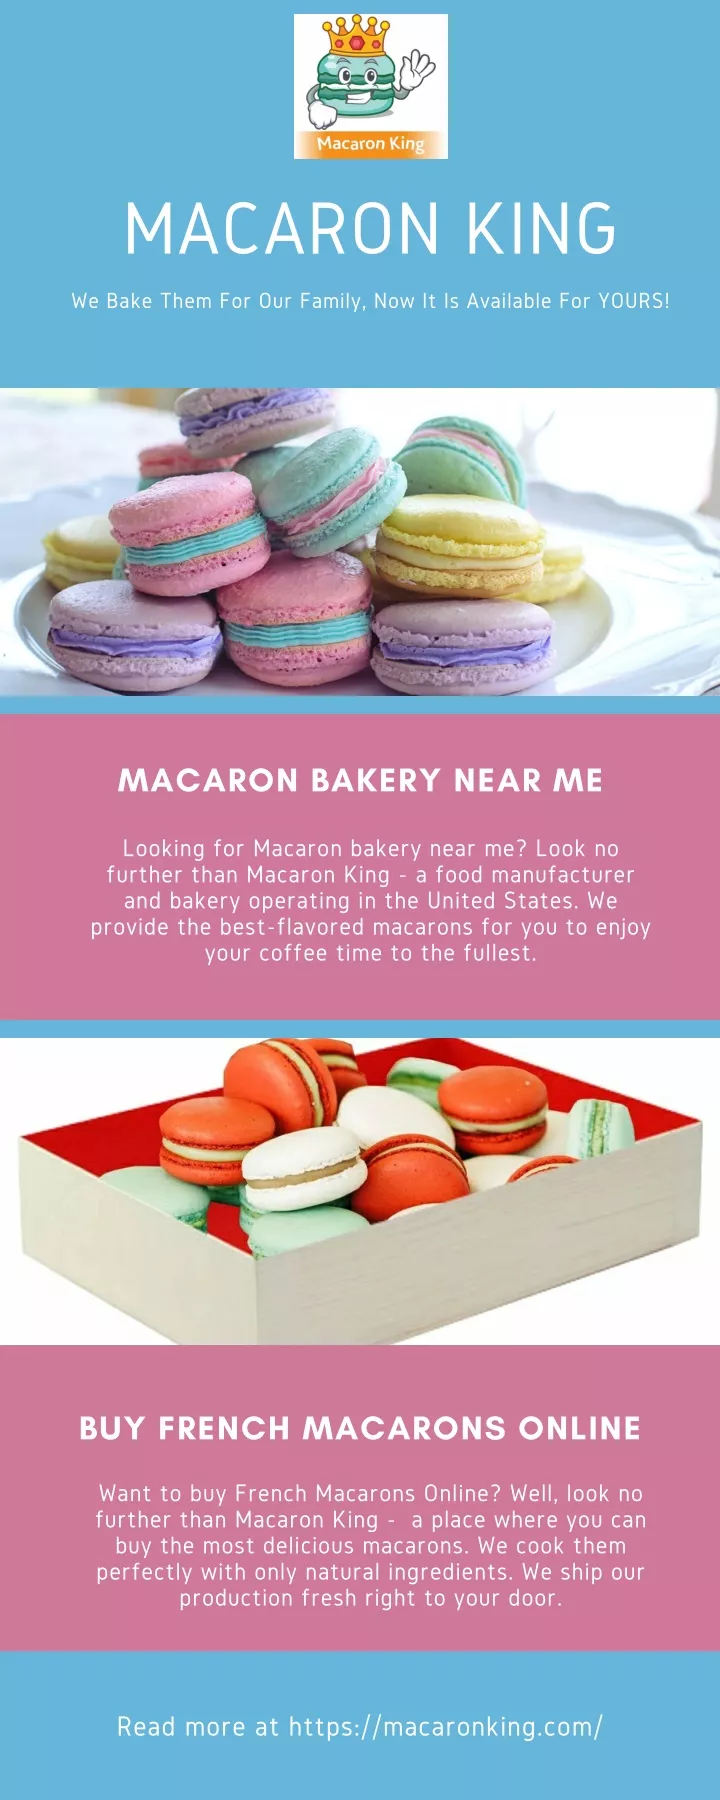 macaron king